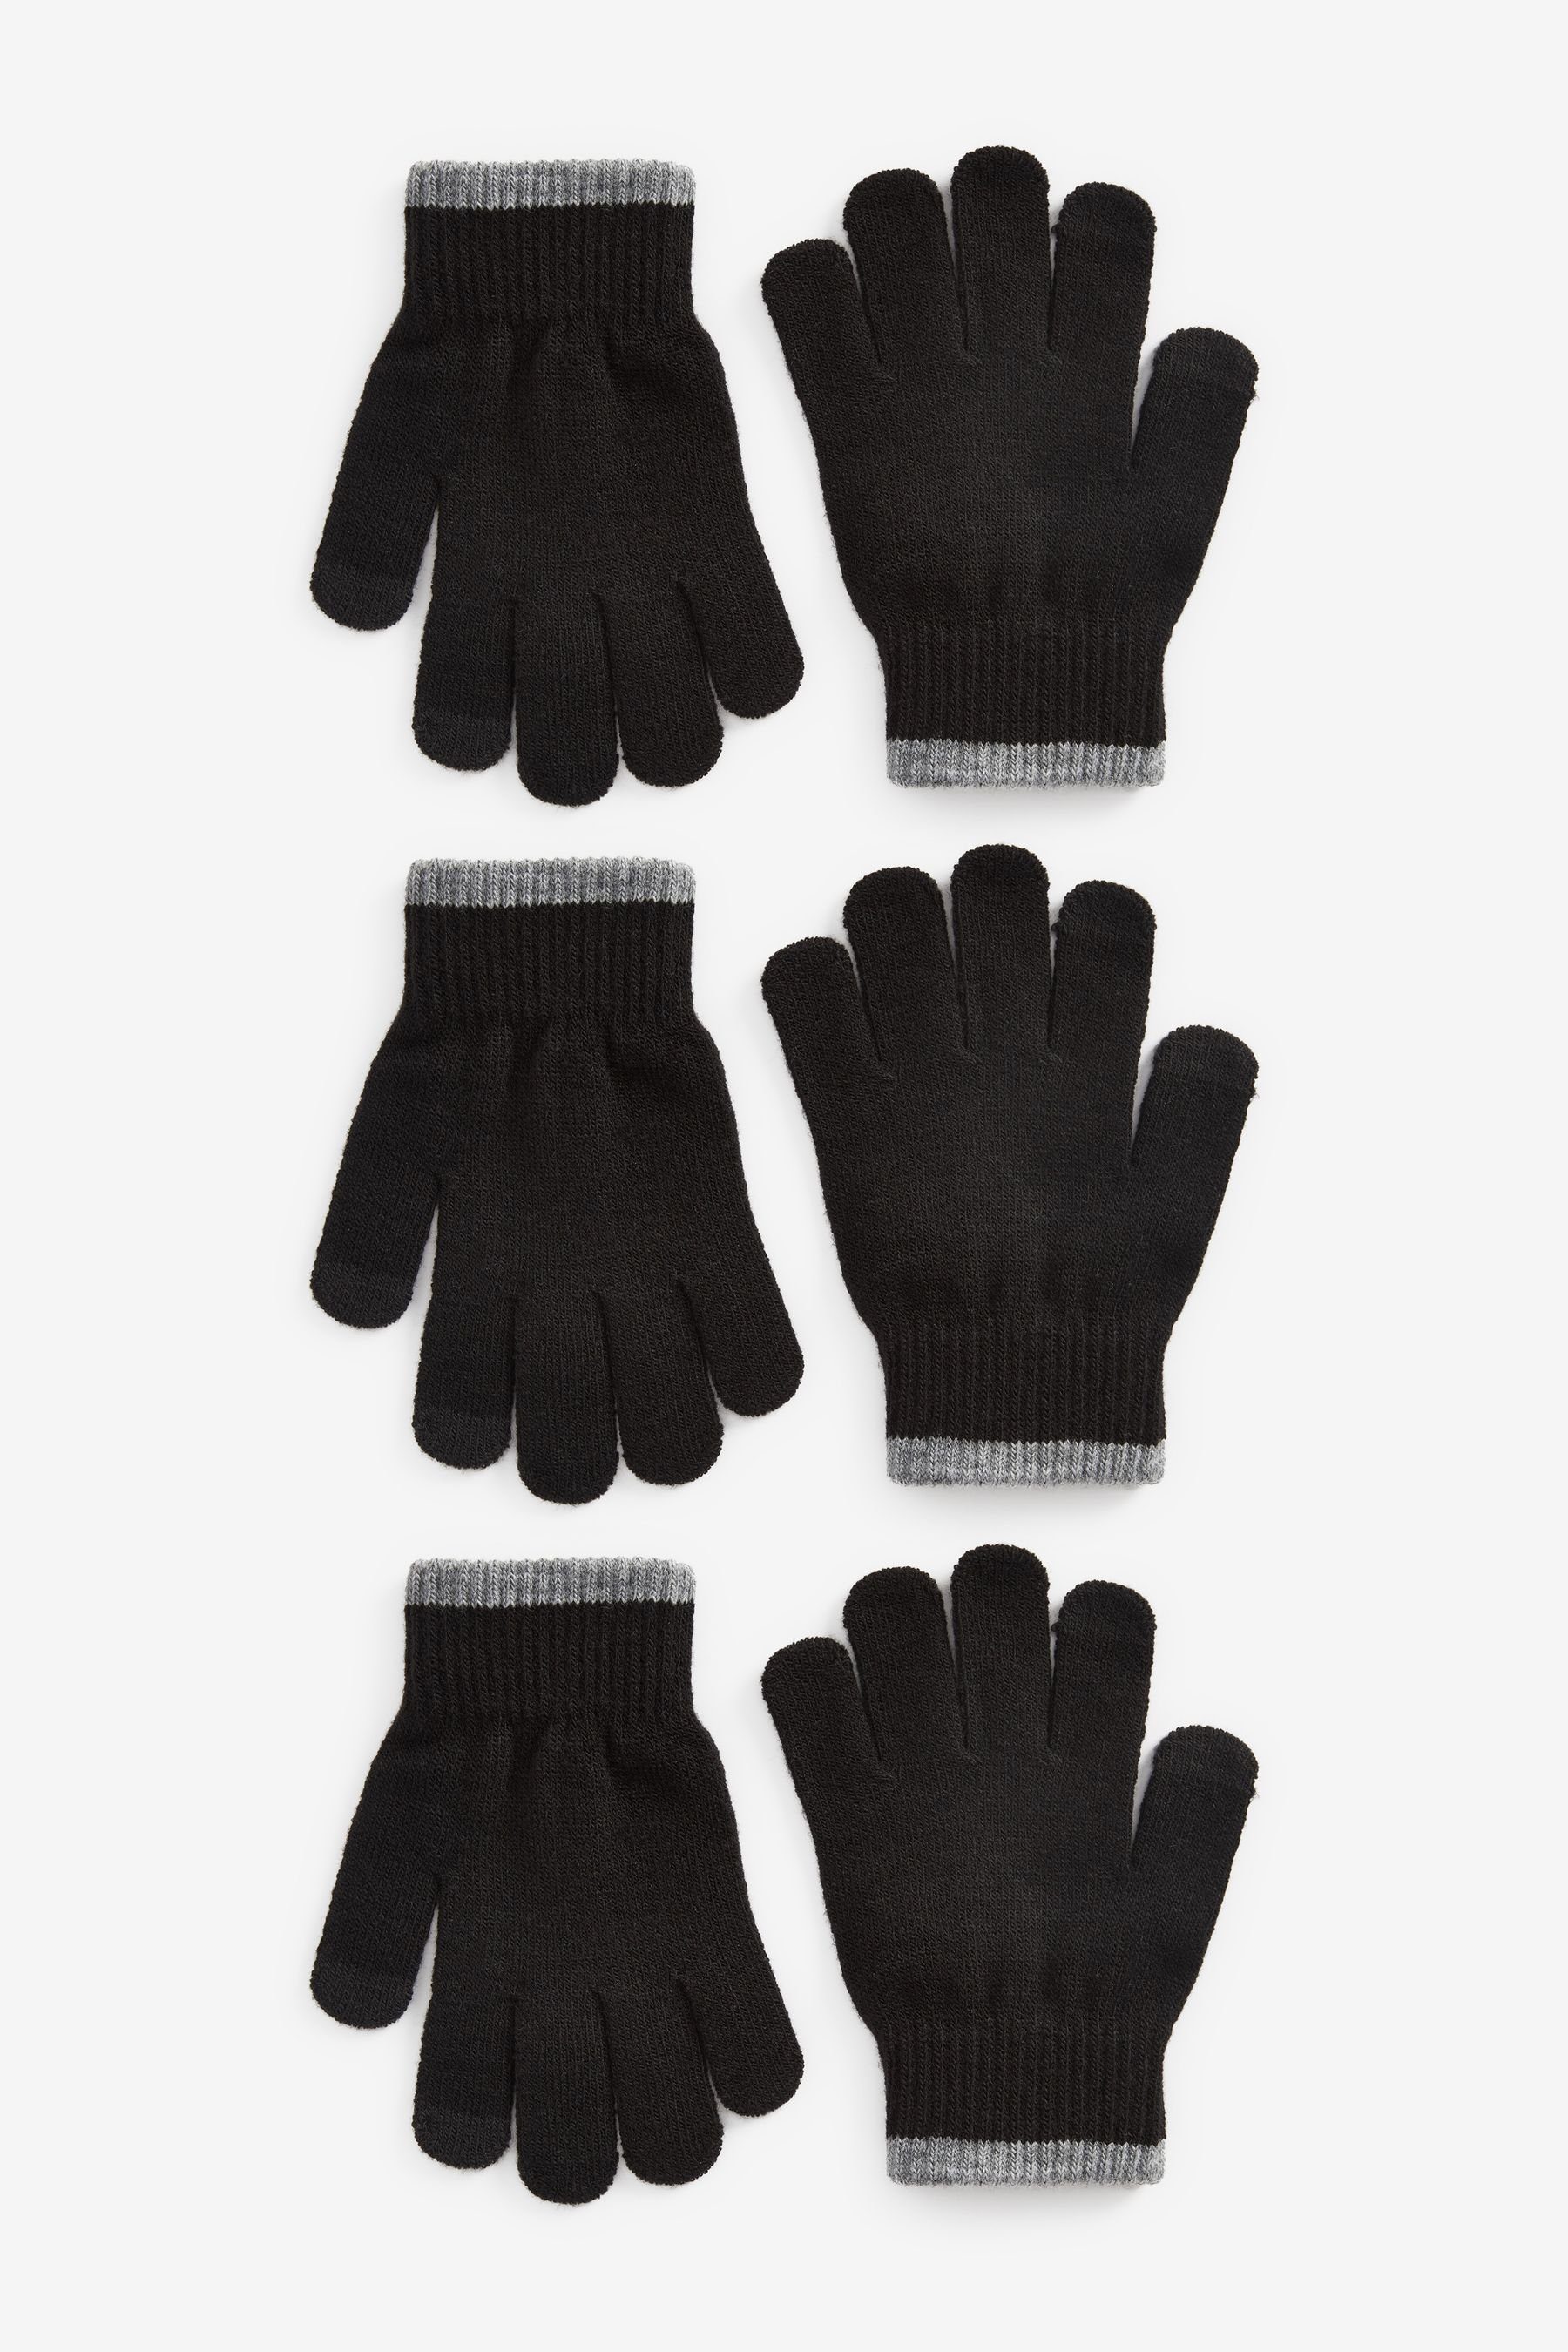 Next Strickhandschuhe 3er-Pack Magic Touch-Tip-Handschuhe Black | Strickhandschuhe